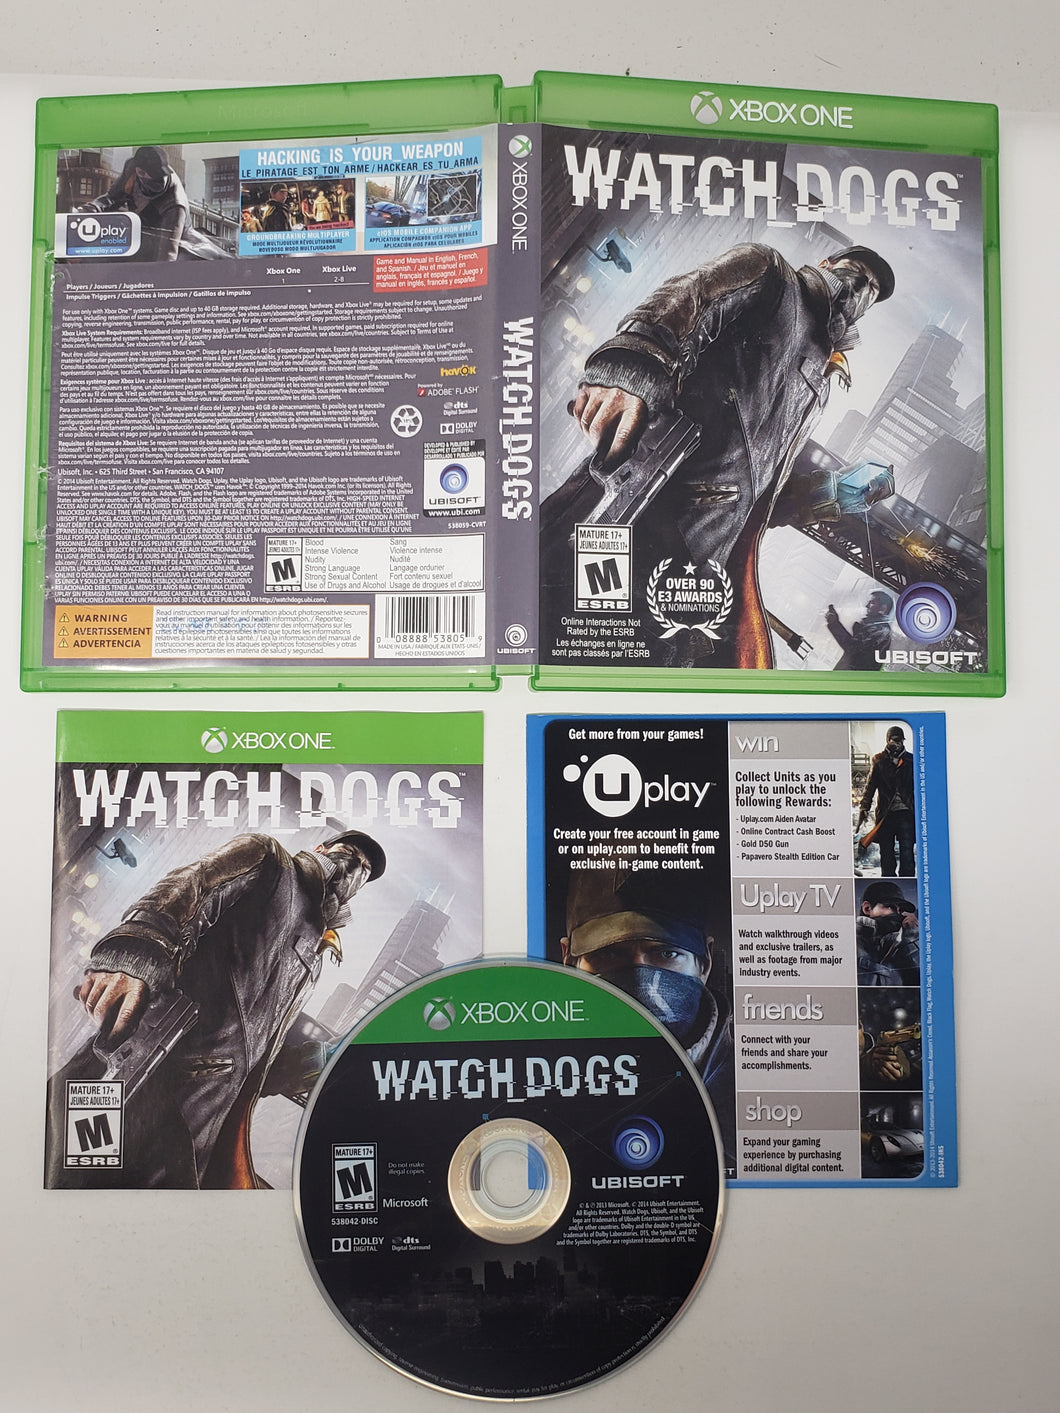 Watch Dogs - Microsoft Xbox One